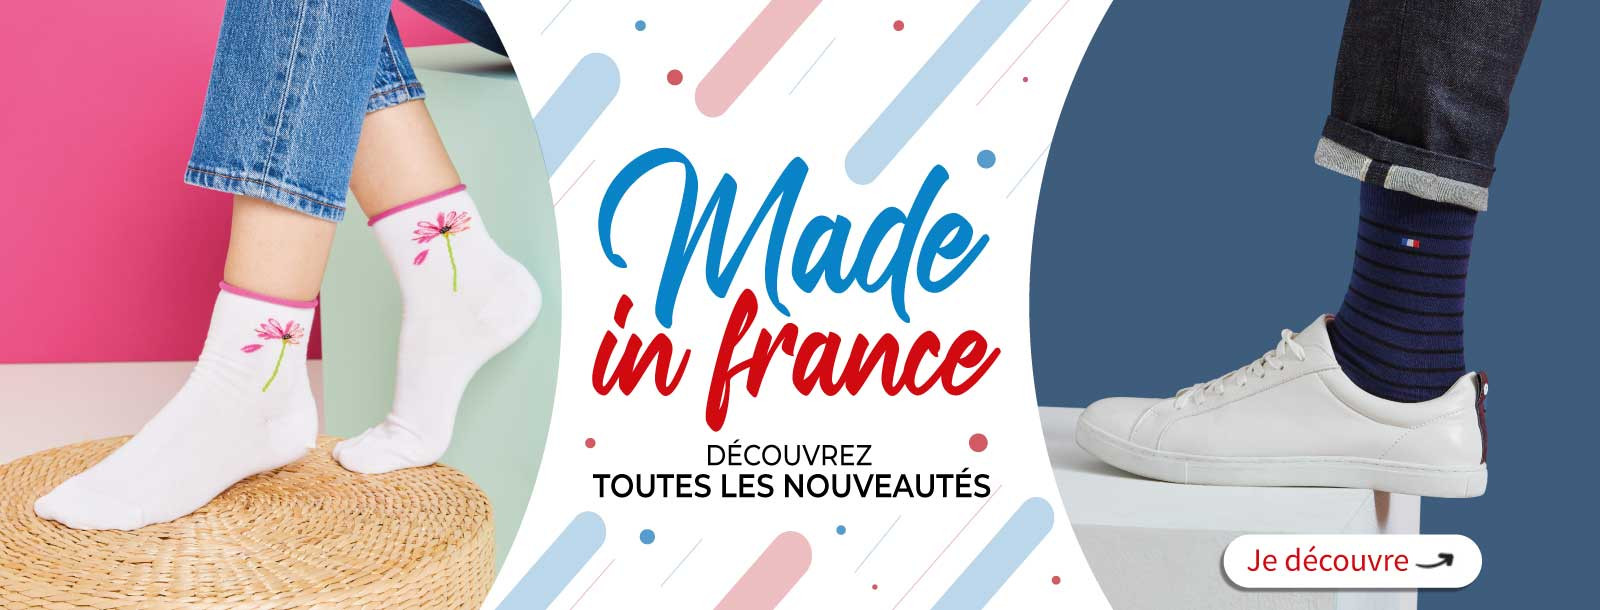 Chaussettes fabriqué en France Chaussettes de qualité Chaussettes